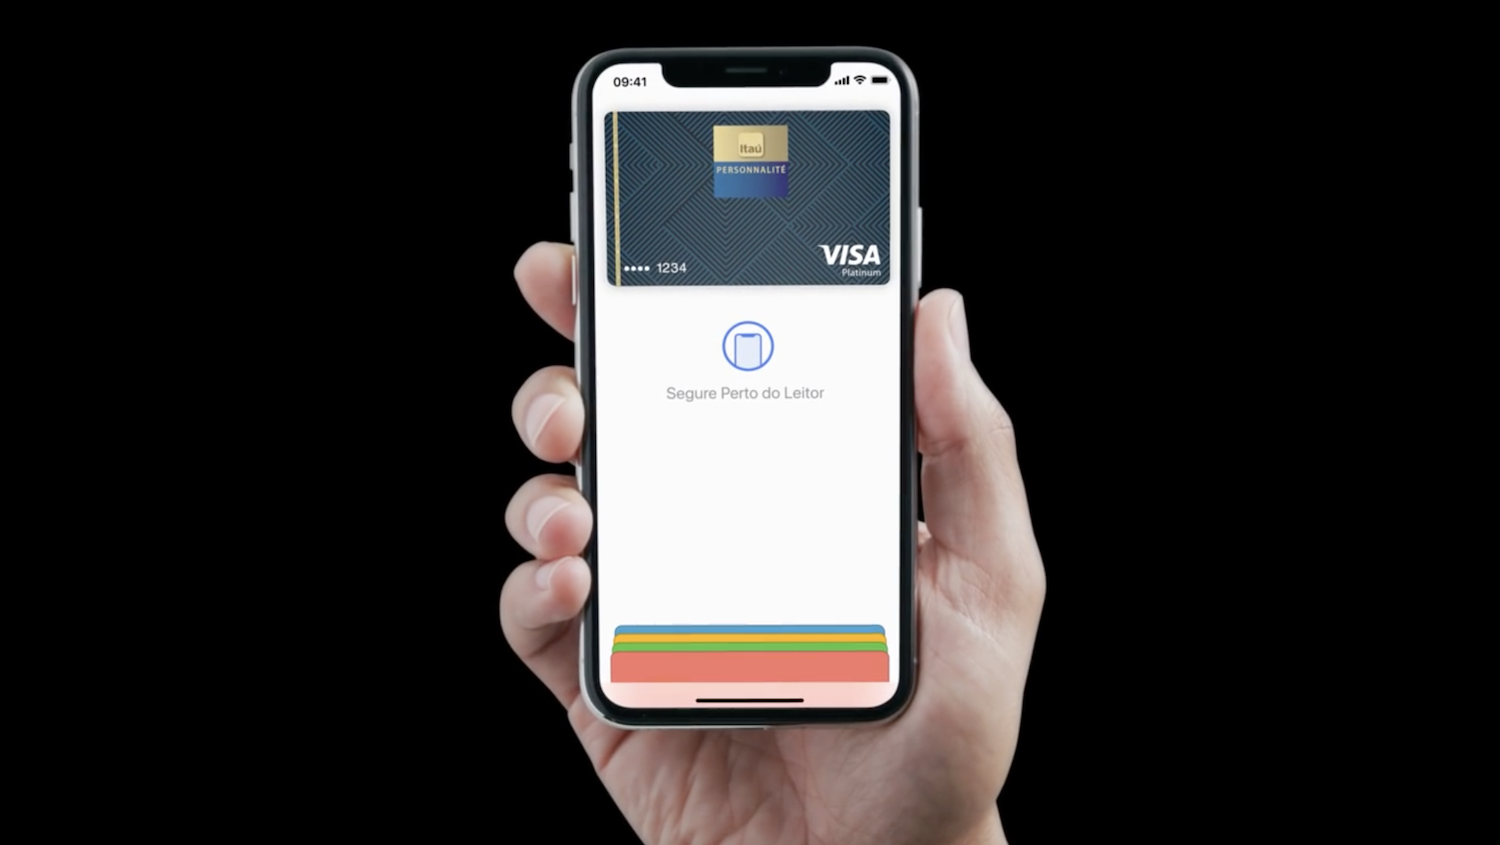 Cartão de Crédito Porto Seguro e Apple Pay